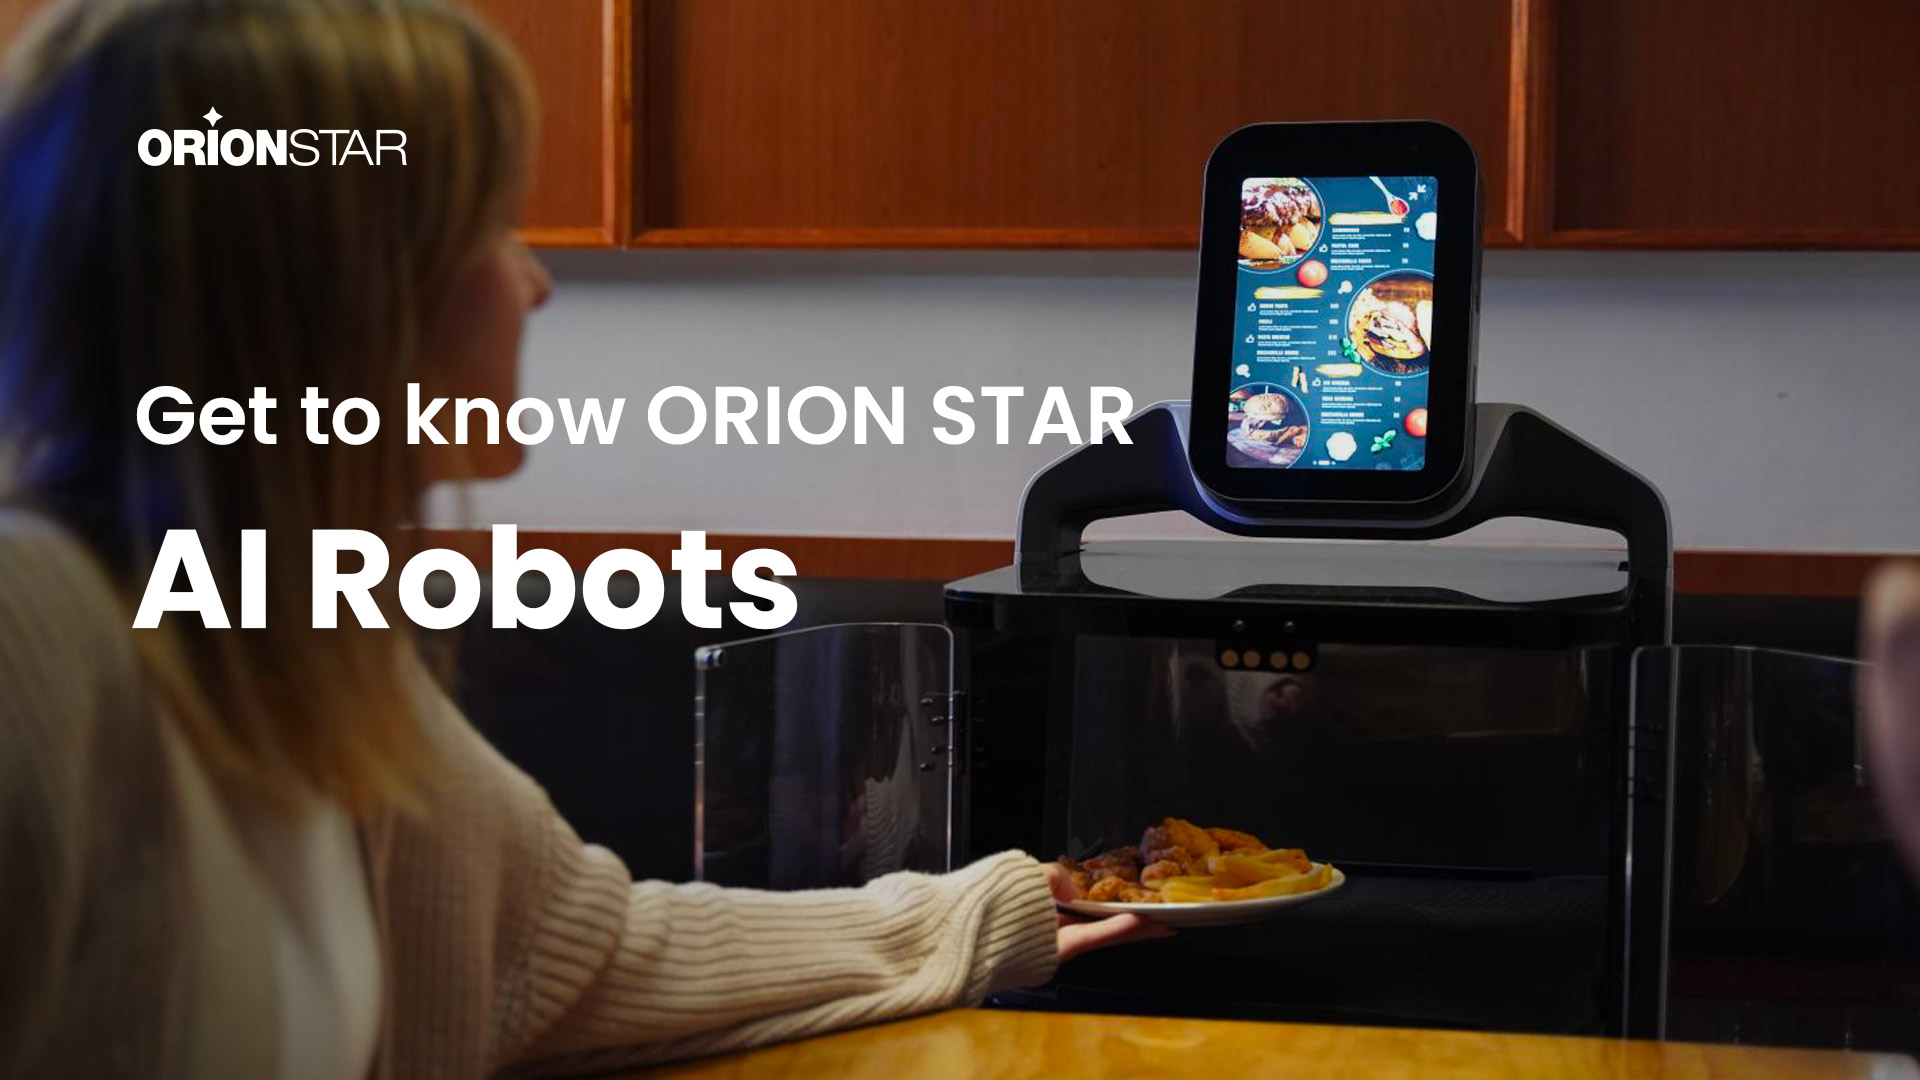 ORION STARロボットのレストランソリューションは信頼できる